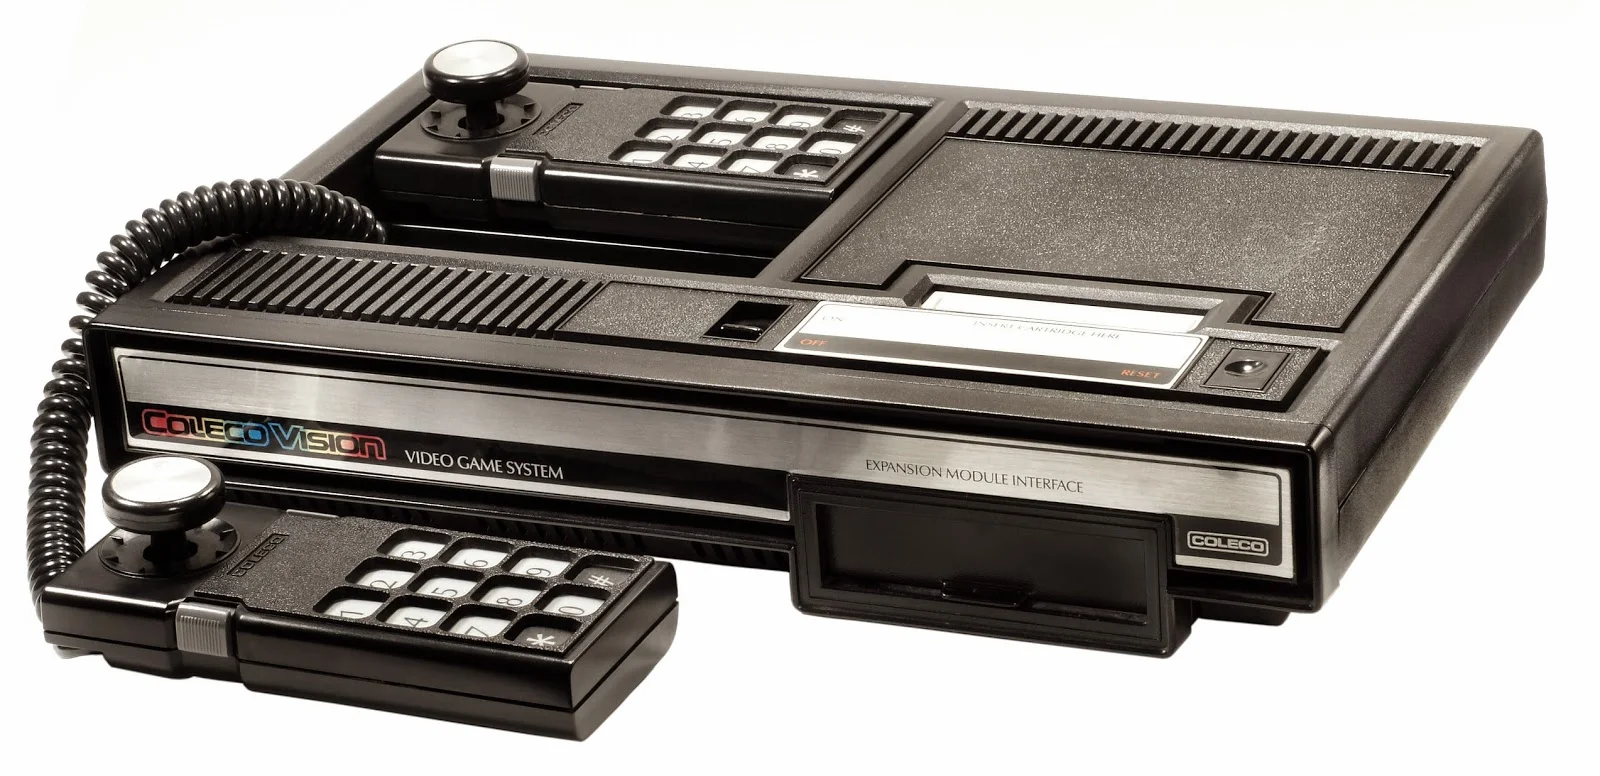 Самые мощные игровые консоли в истории — от Atari 2600 до Xbox One X - фото 4